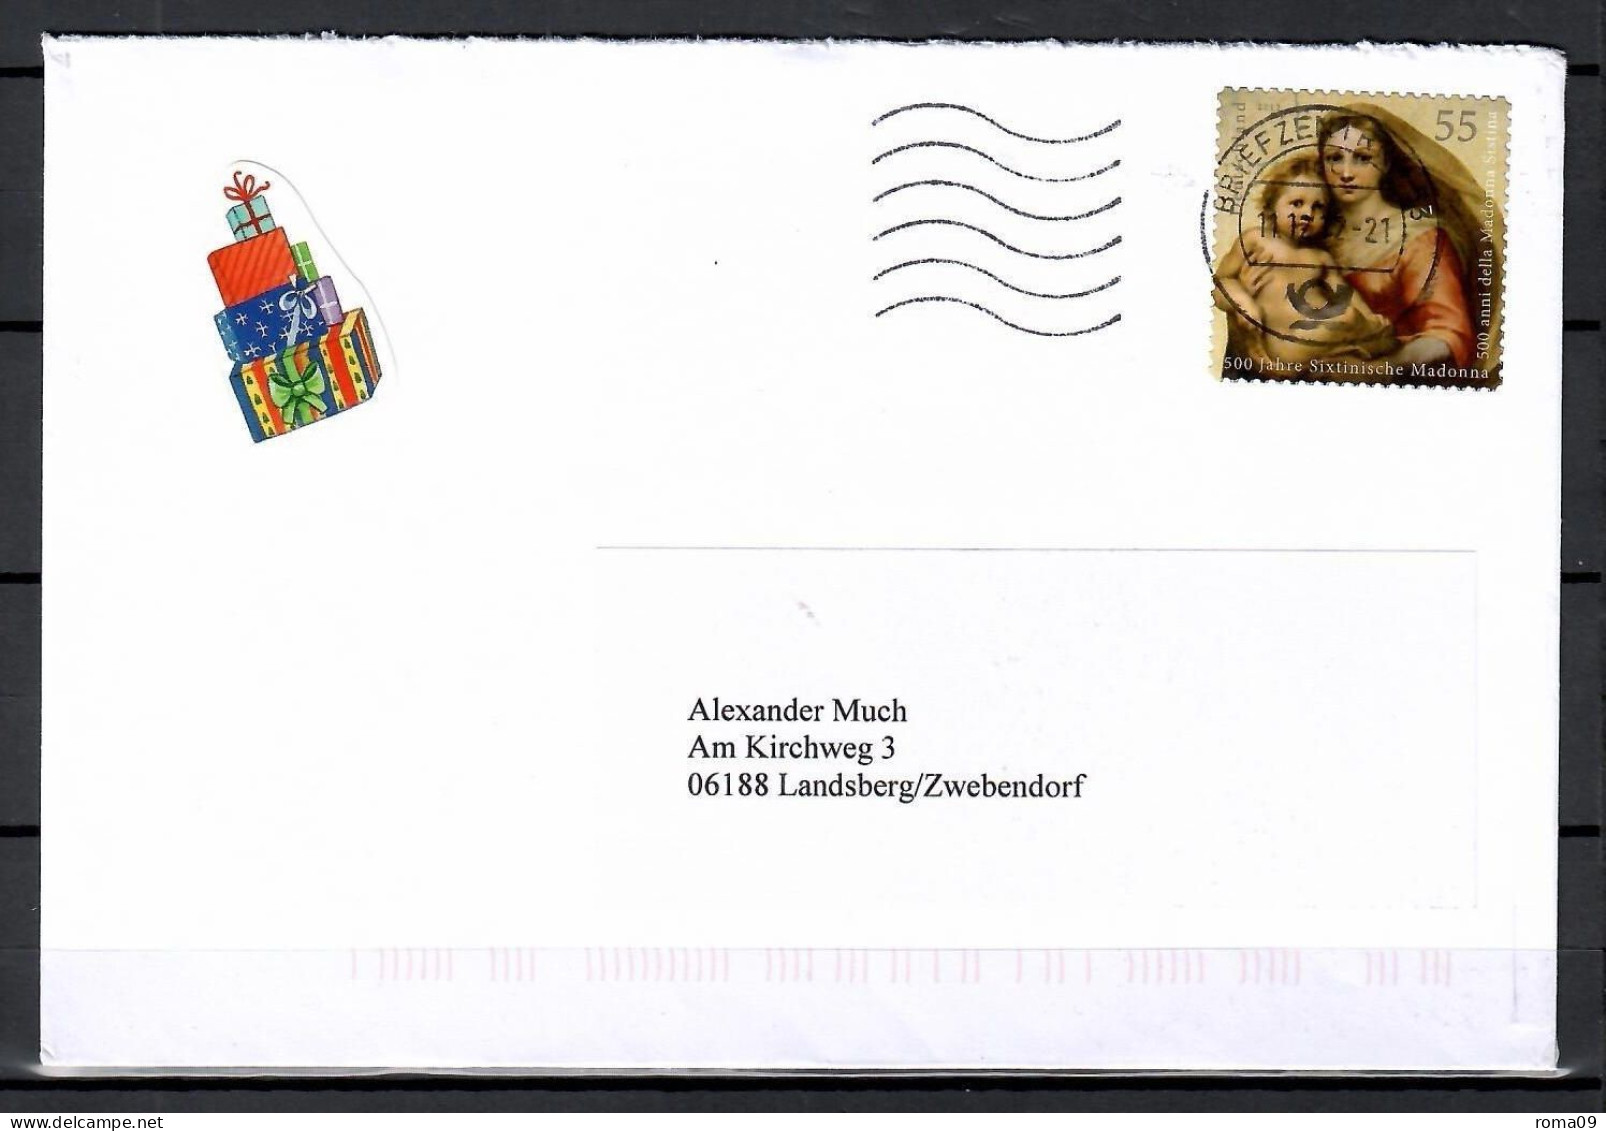 MiNr. 2965; 500 J. Sixtinische Madonna, Auf Portoger. Brief Von BZ 53 Nach Landsberg; E-92 - Covers & Documents